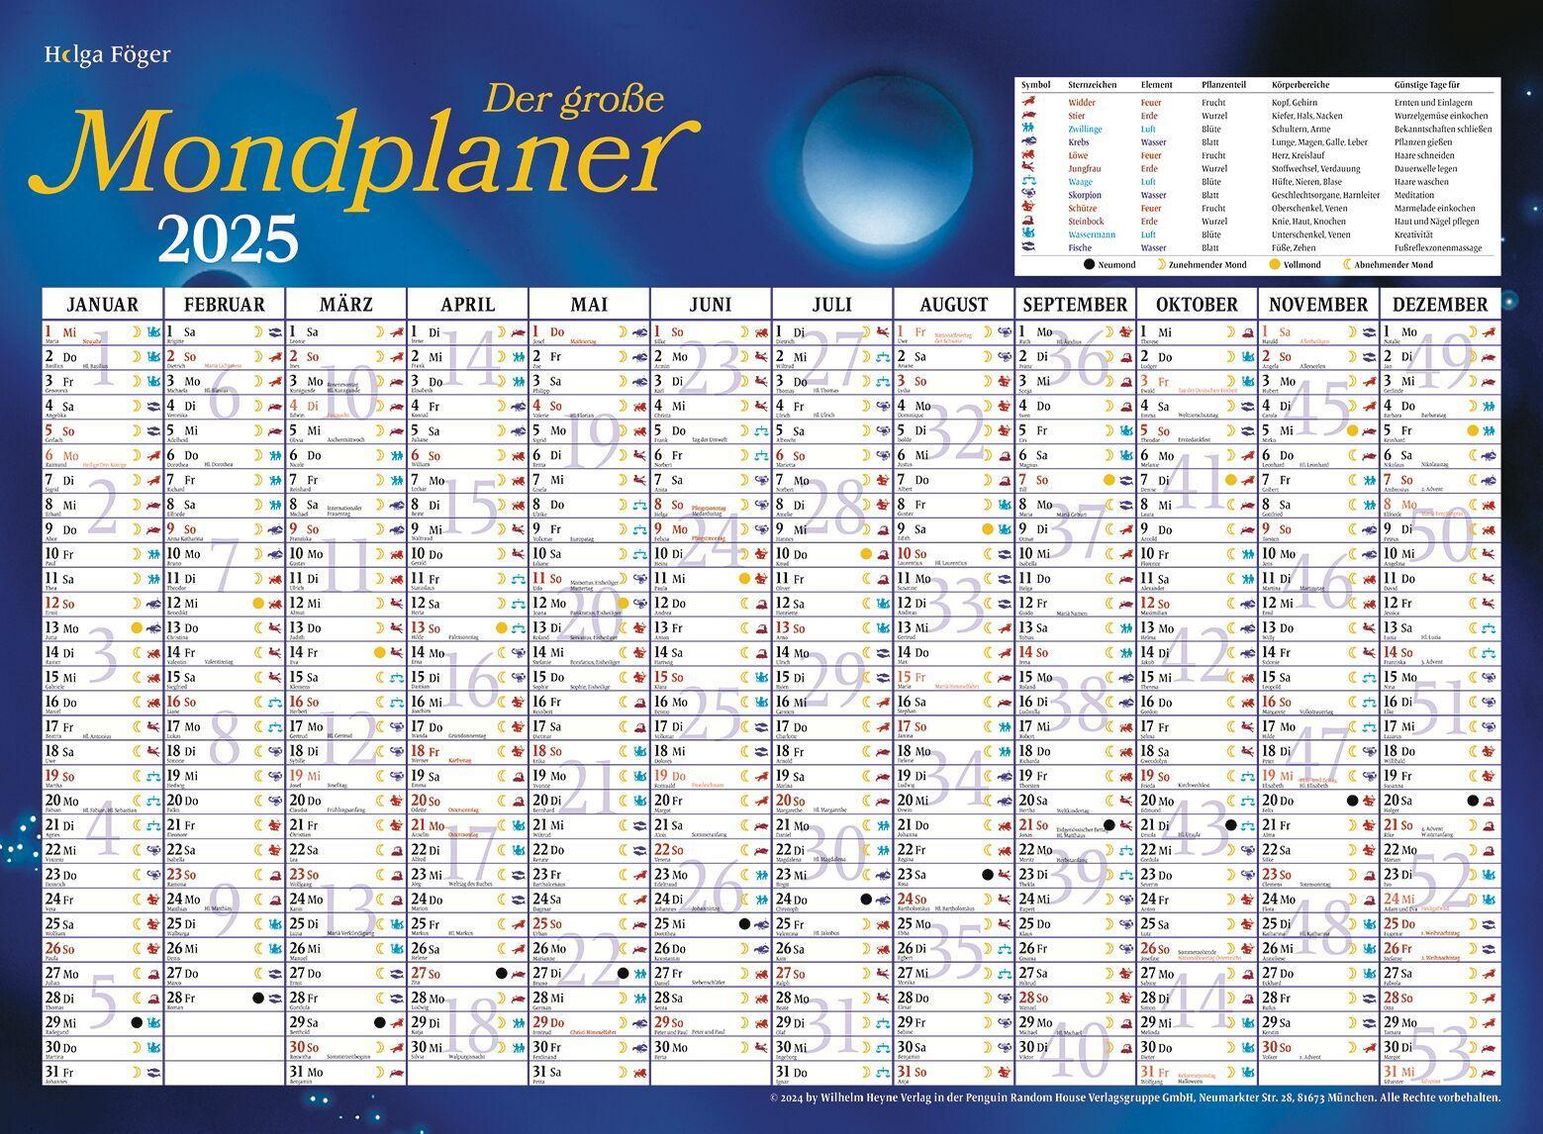 Der große Mondkalender 2025 - Kalender bei Weltbild.de bestellen